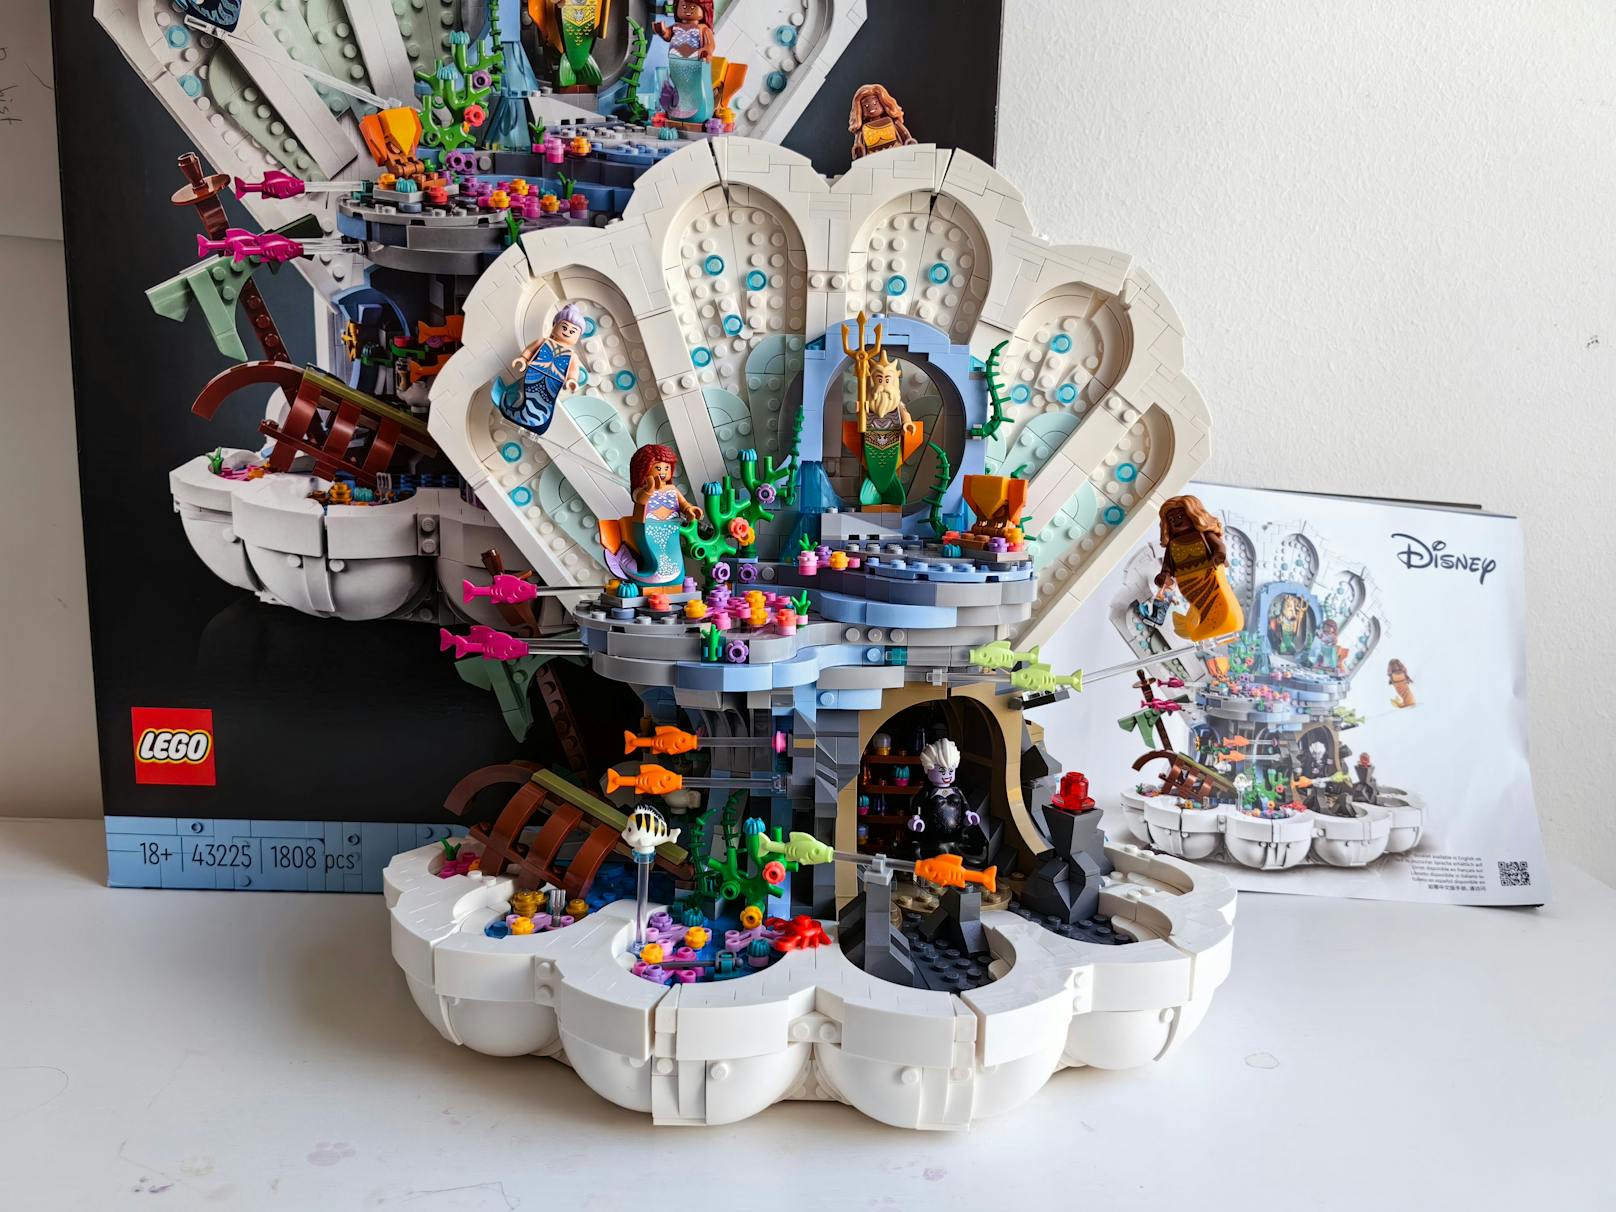 LEGO bietet mit dem Set 43225 ein wunderbares Ausstellungsmodell für Disney-Fans, das sich mit 1.808 Teilen und der Konstruktion an LEGO-erfahrene Personen richtet.